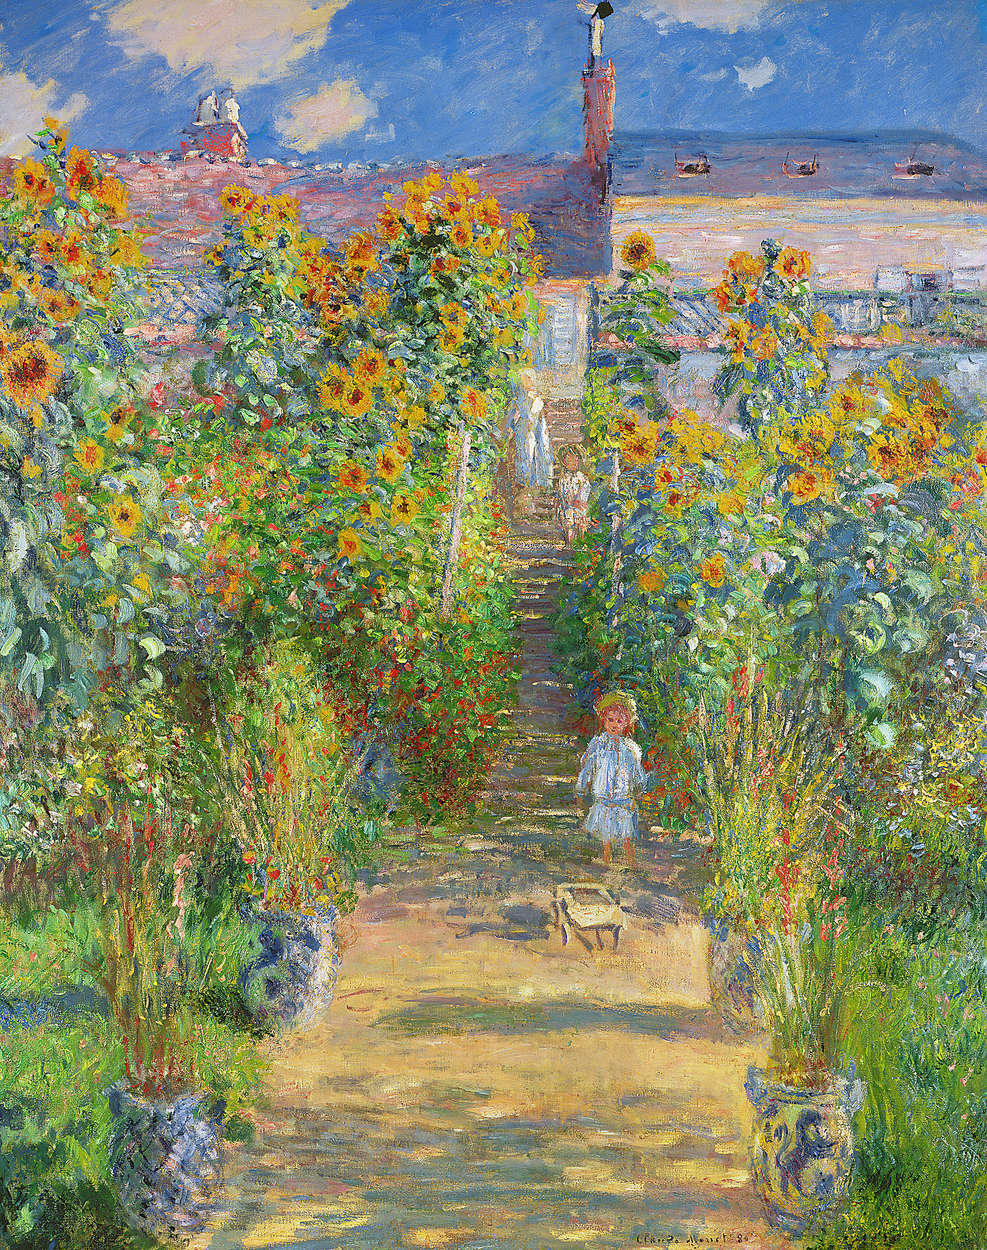             Fotomurali "Il giardino dell'artista a Vetheuil" di Claude Monet
        